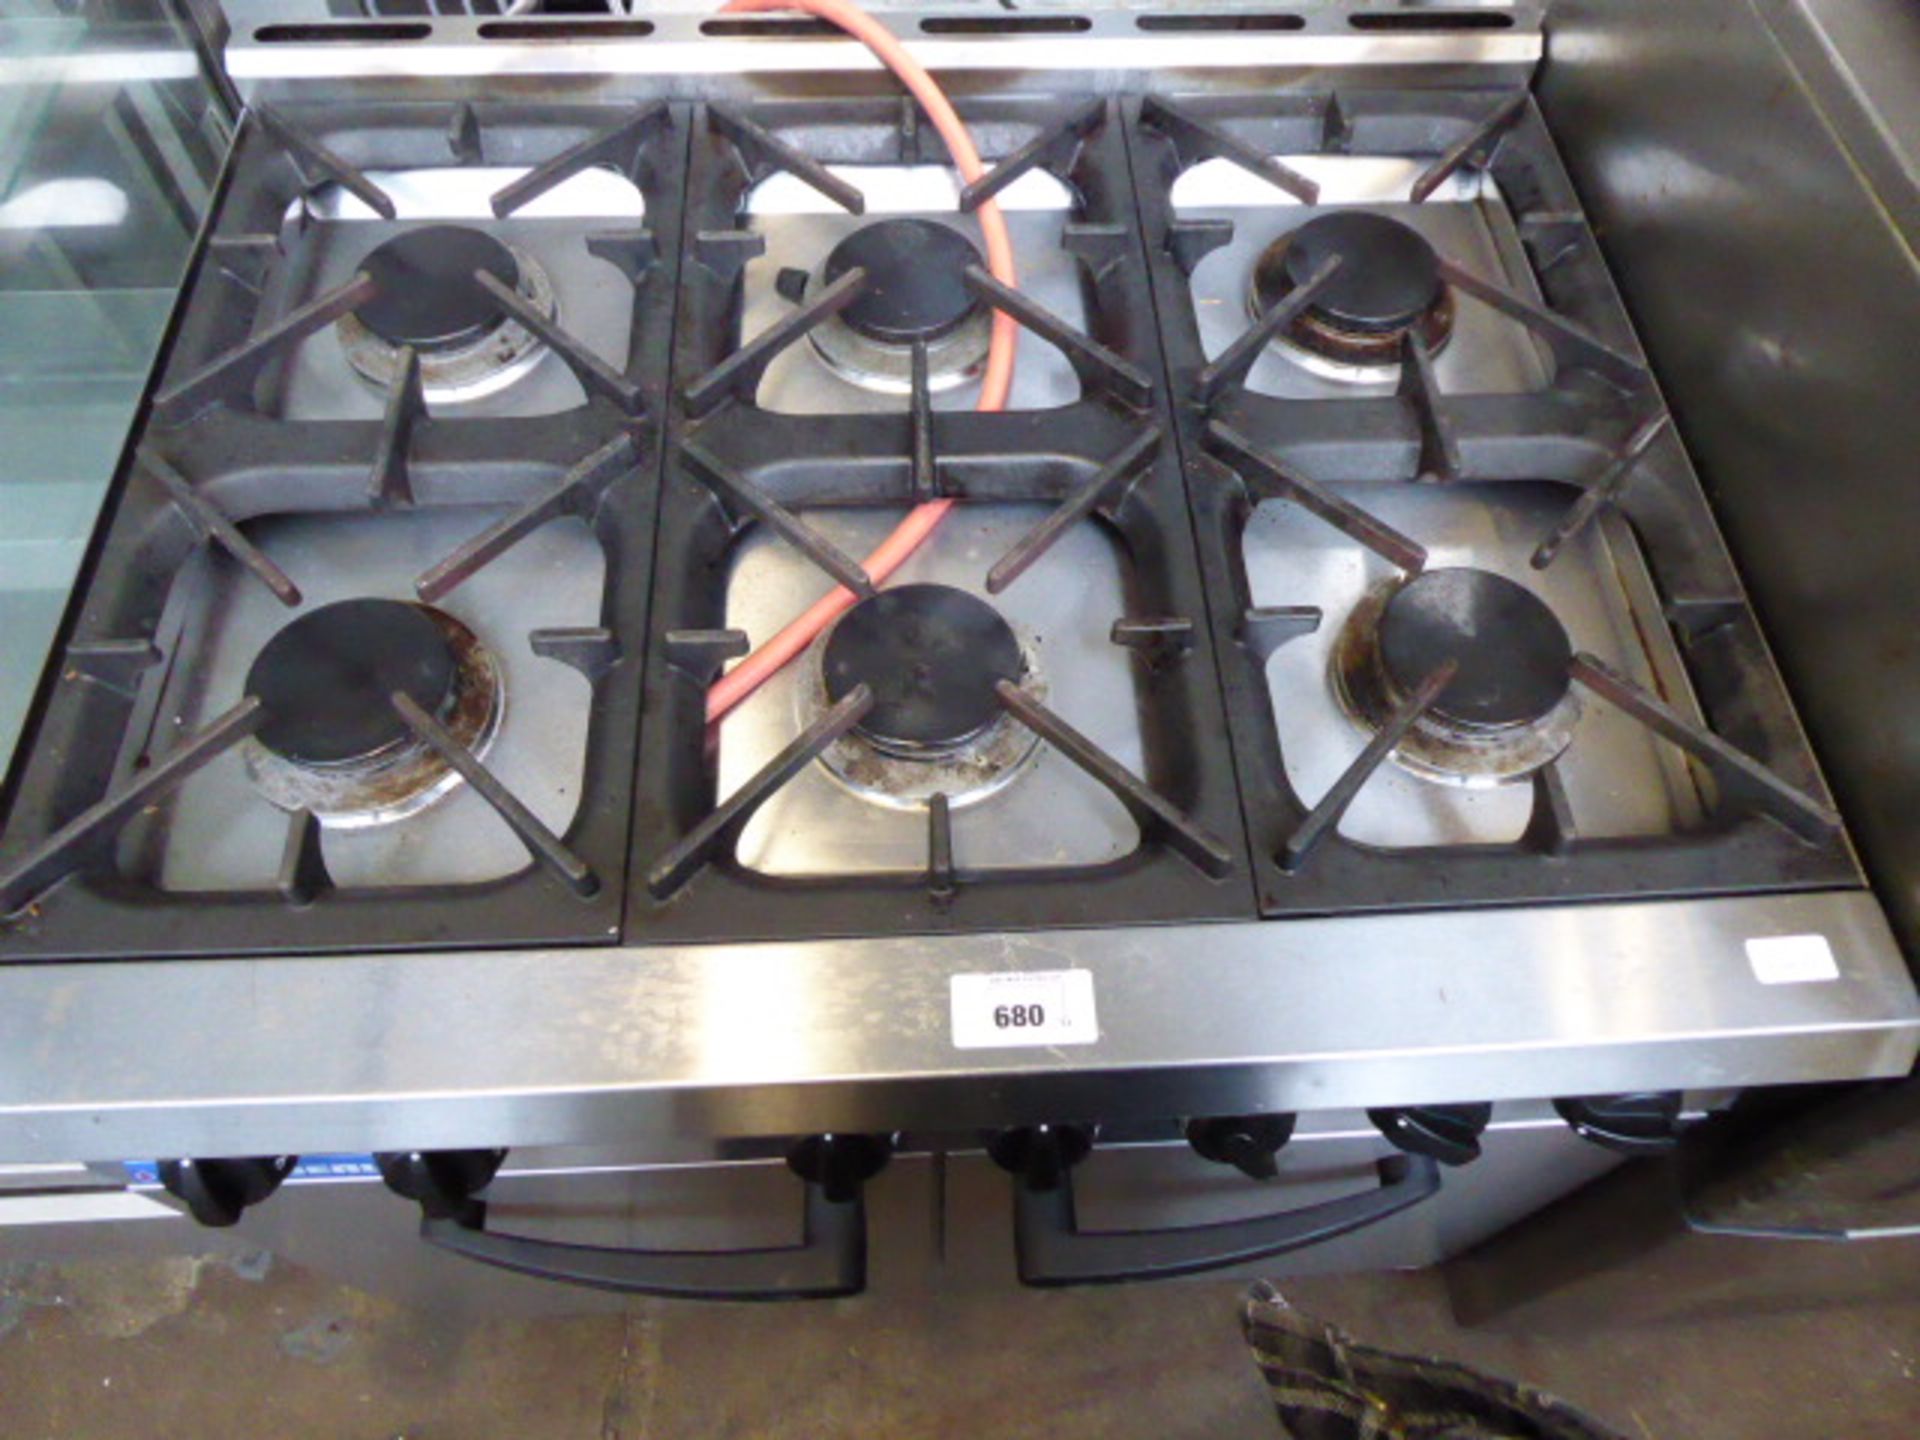 90cm LPG Blueseal 6 burner cooker with 2 door oven under